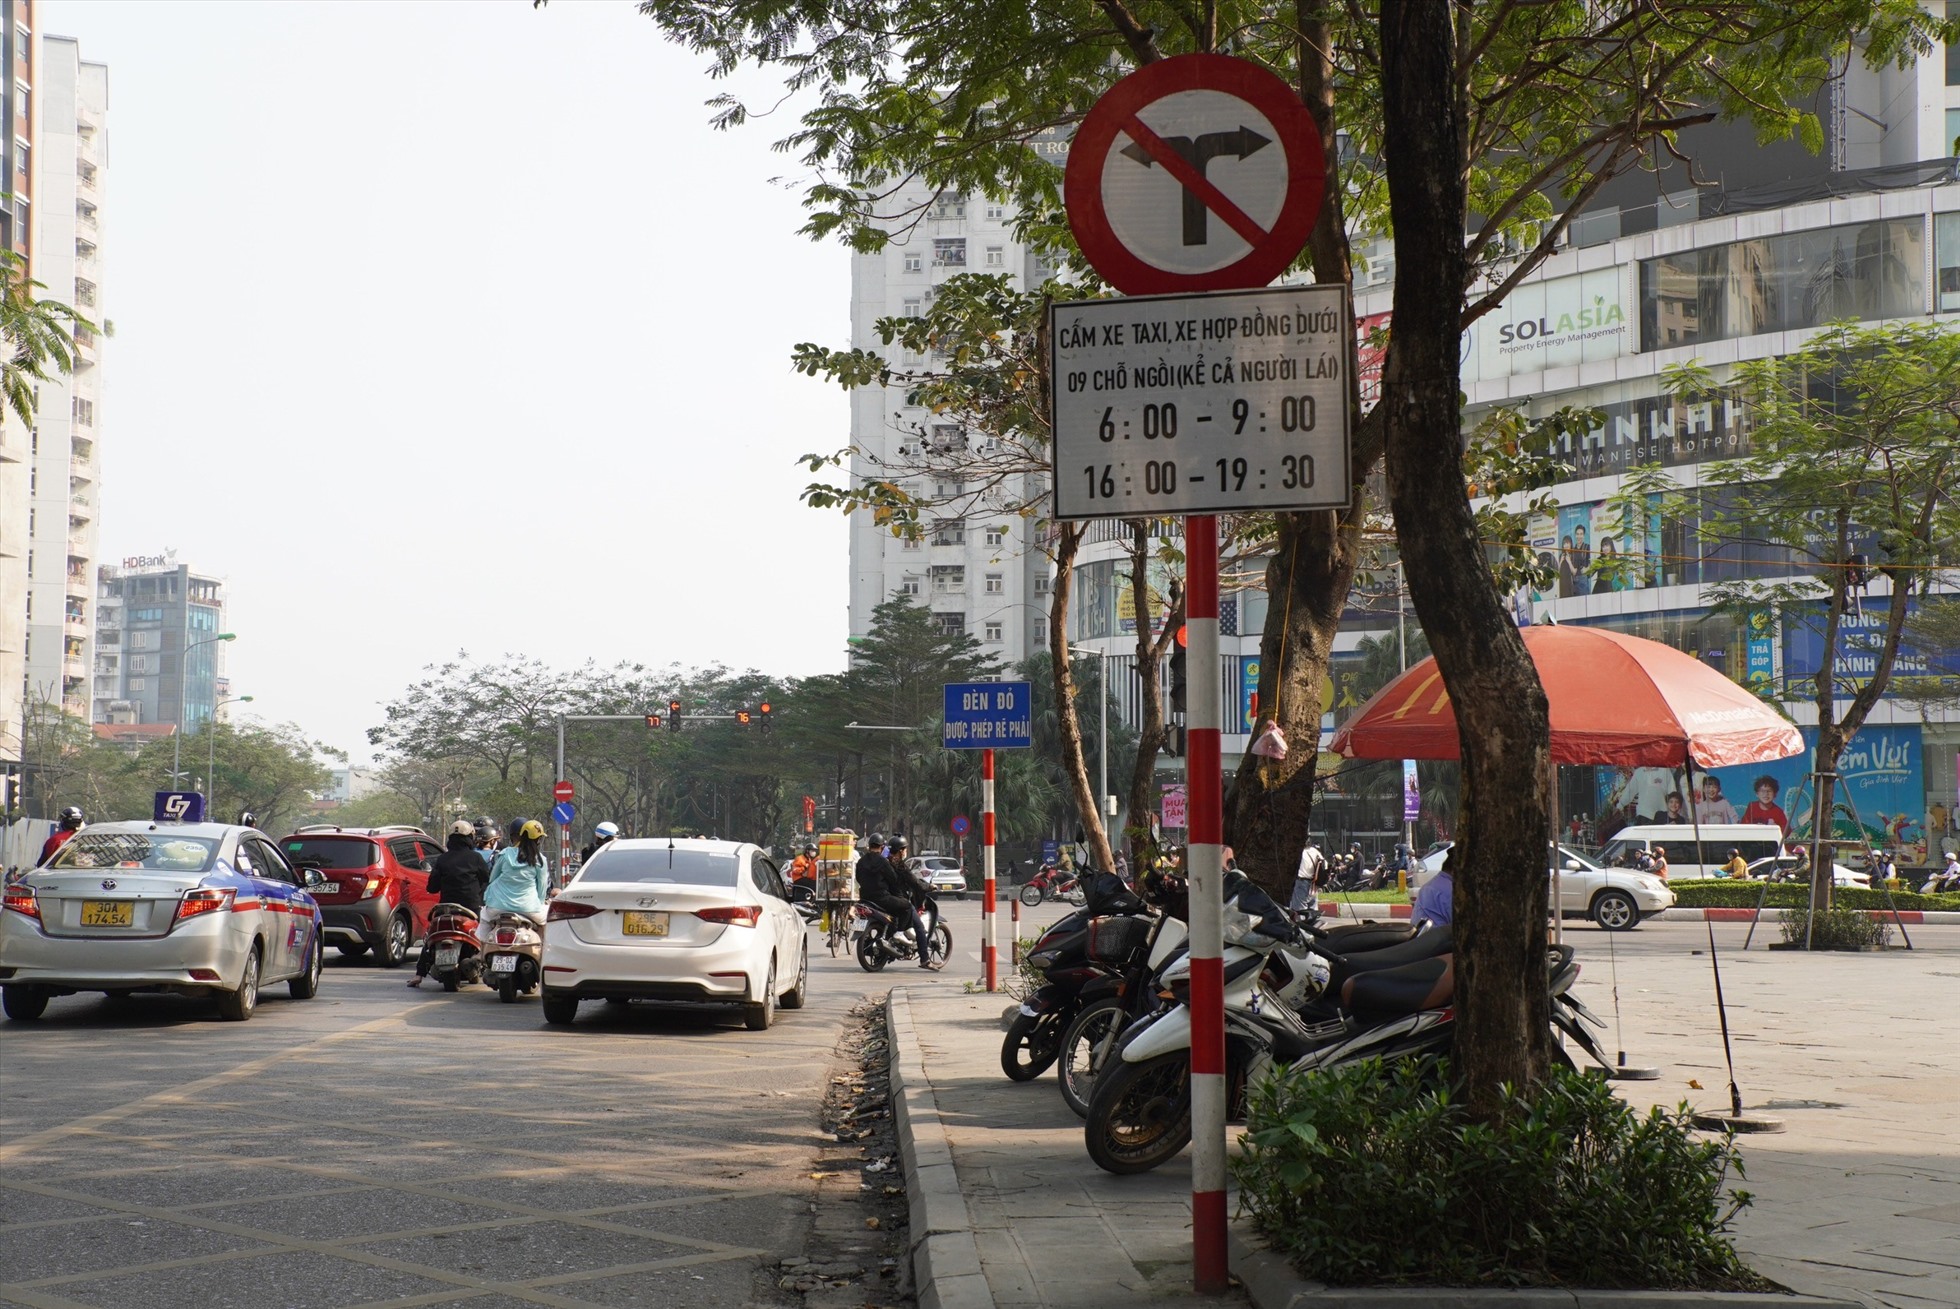 Từ đường Hoàng Đạo Thúy, xe taxi và xe hợp đồng dưới 9 chỗ bị cấm rẽ vào đường Lê Văn Lương.